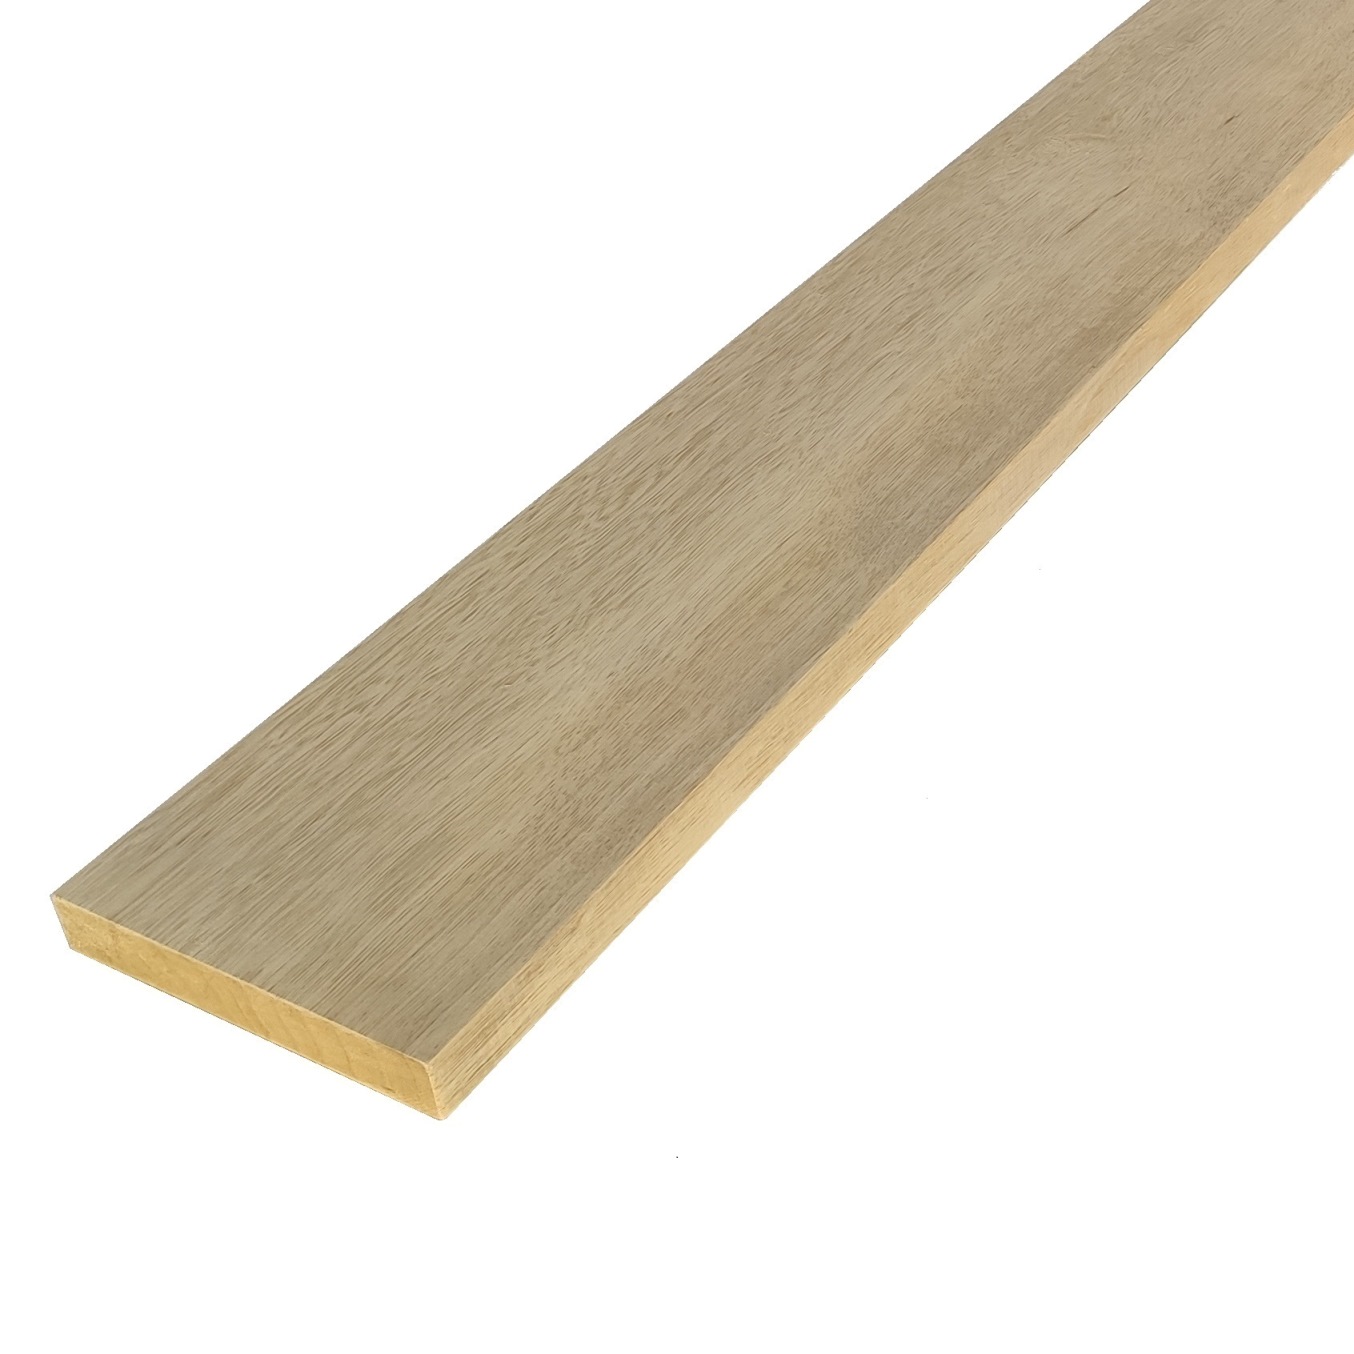 Tavola legno Frakè Refilato Piallato mm 23 x 130 x 2100